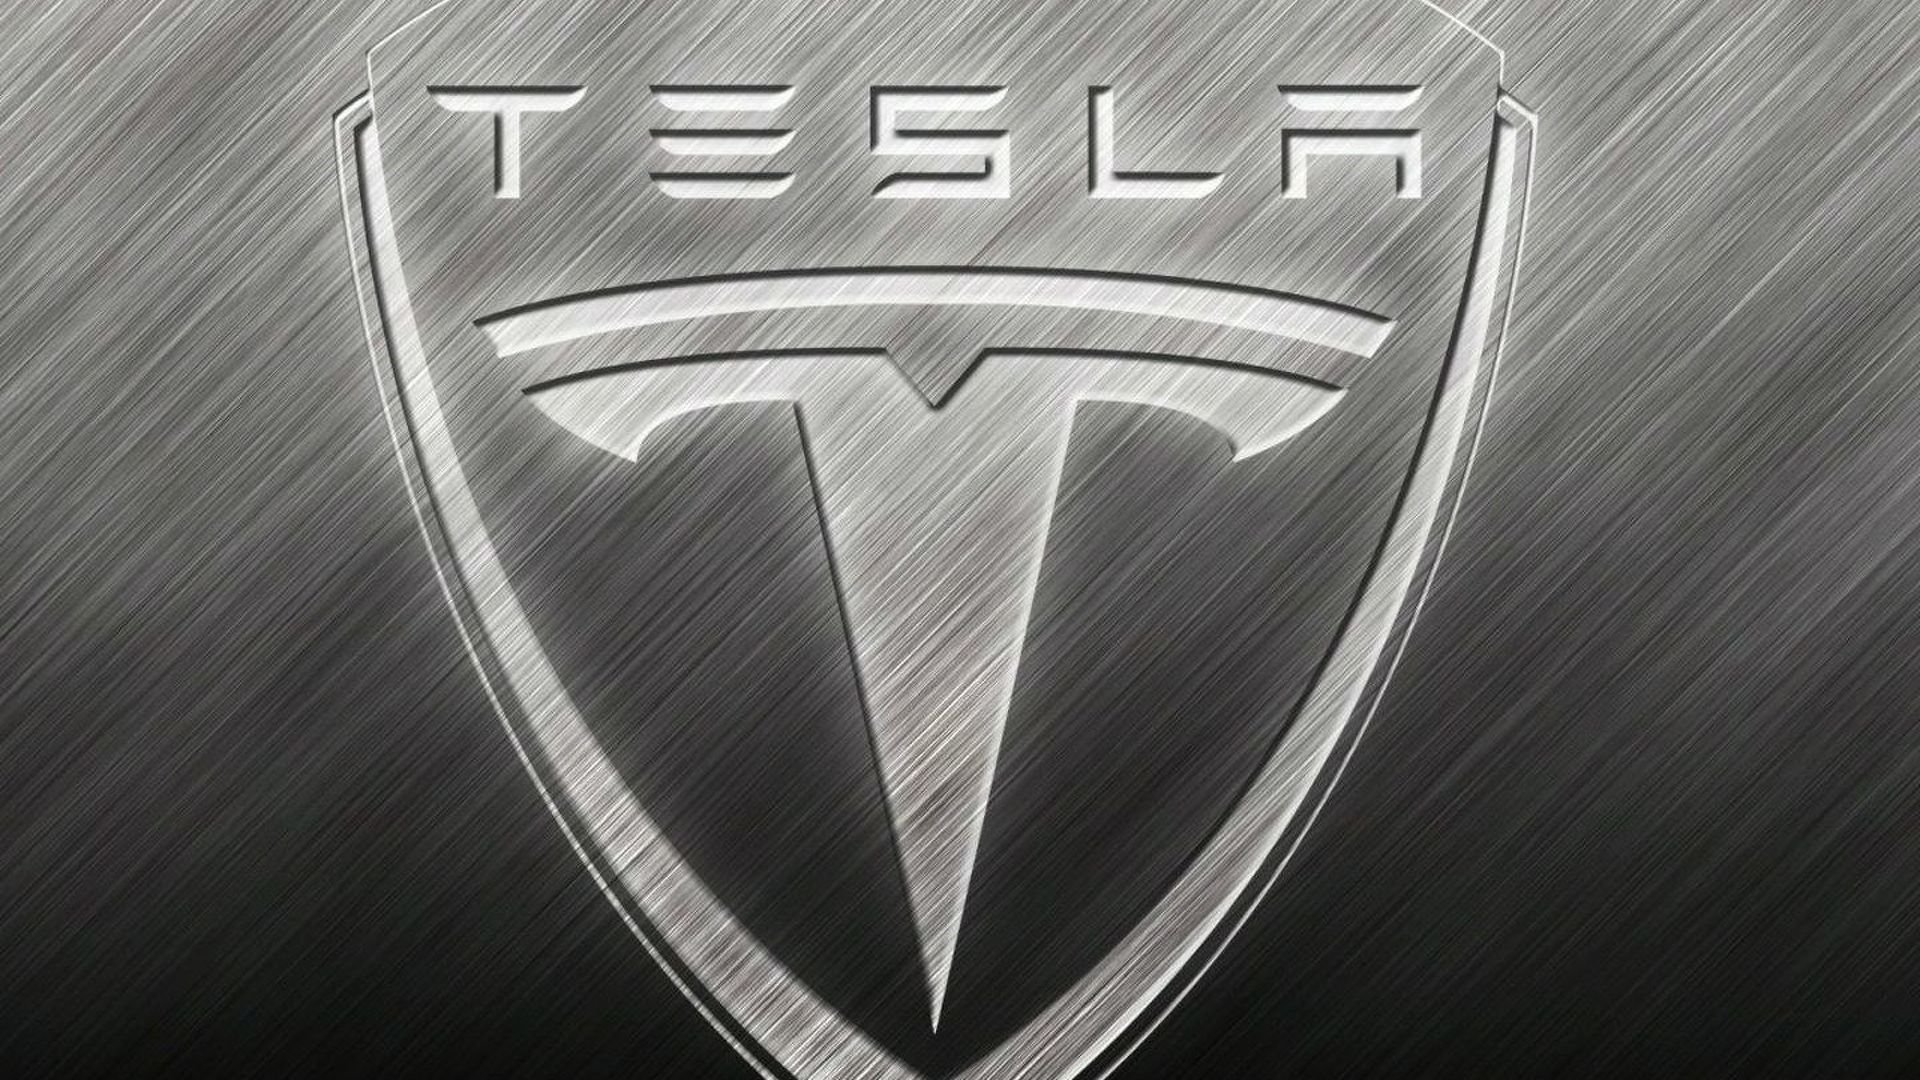 Знак теслы на машине. Tesla марка машины. Значки автомобилей. Значок Tesla на машине. Значок марки автомобиля Тесла.